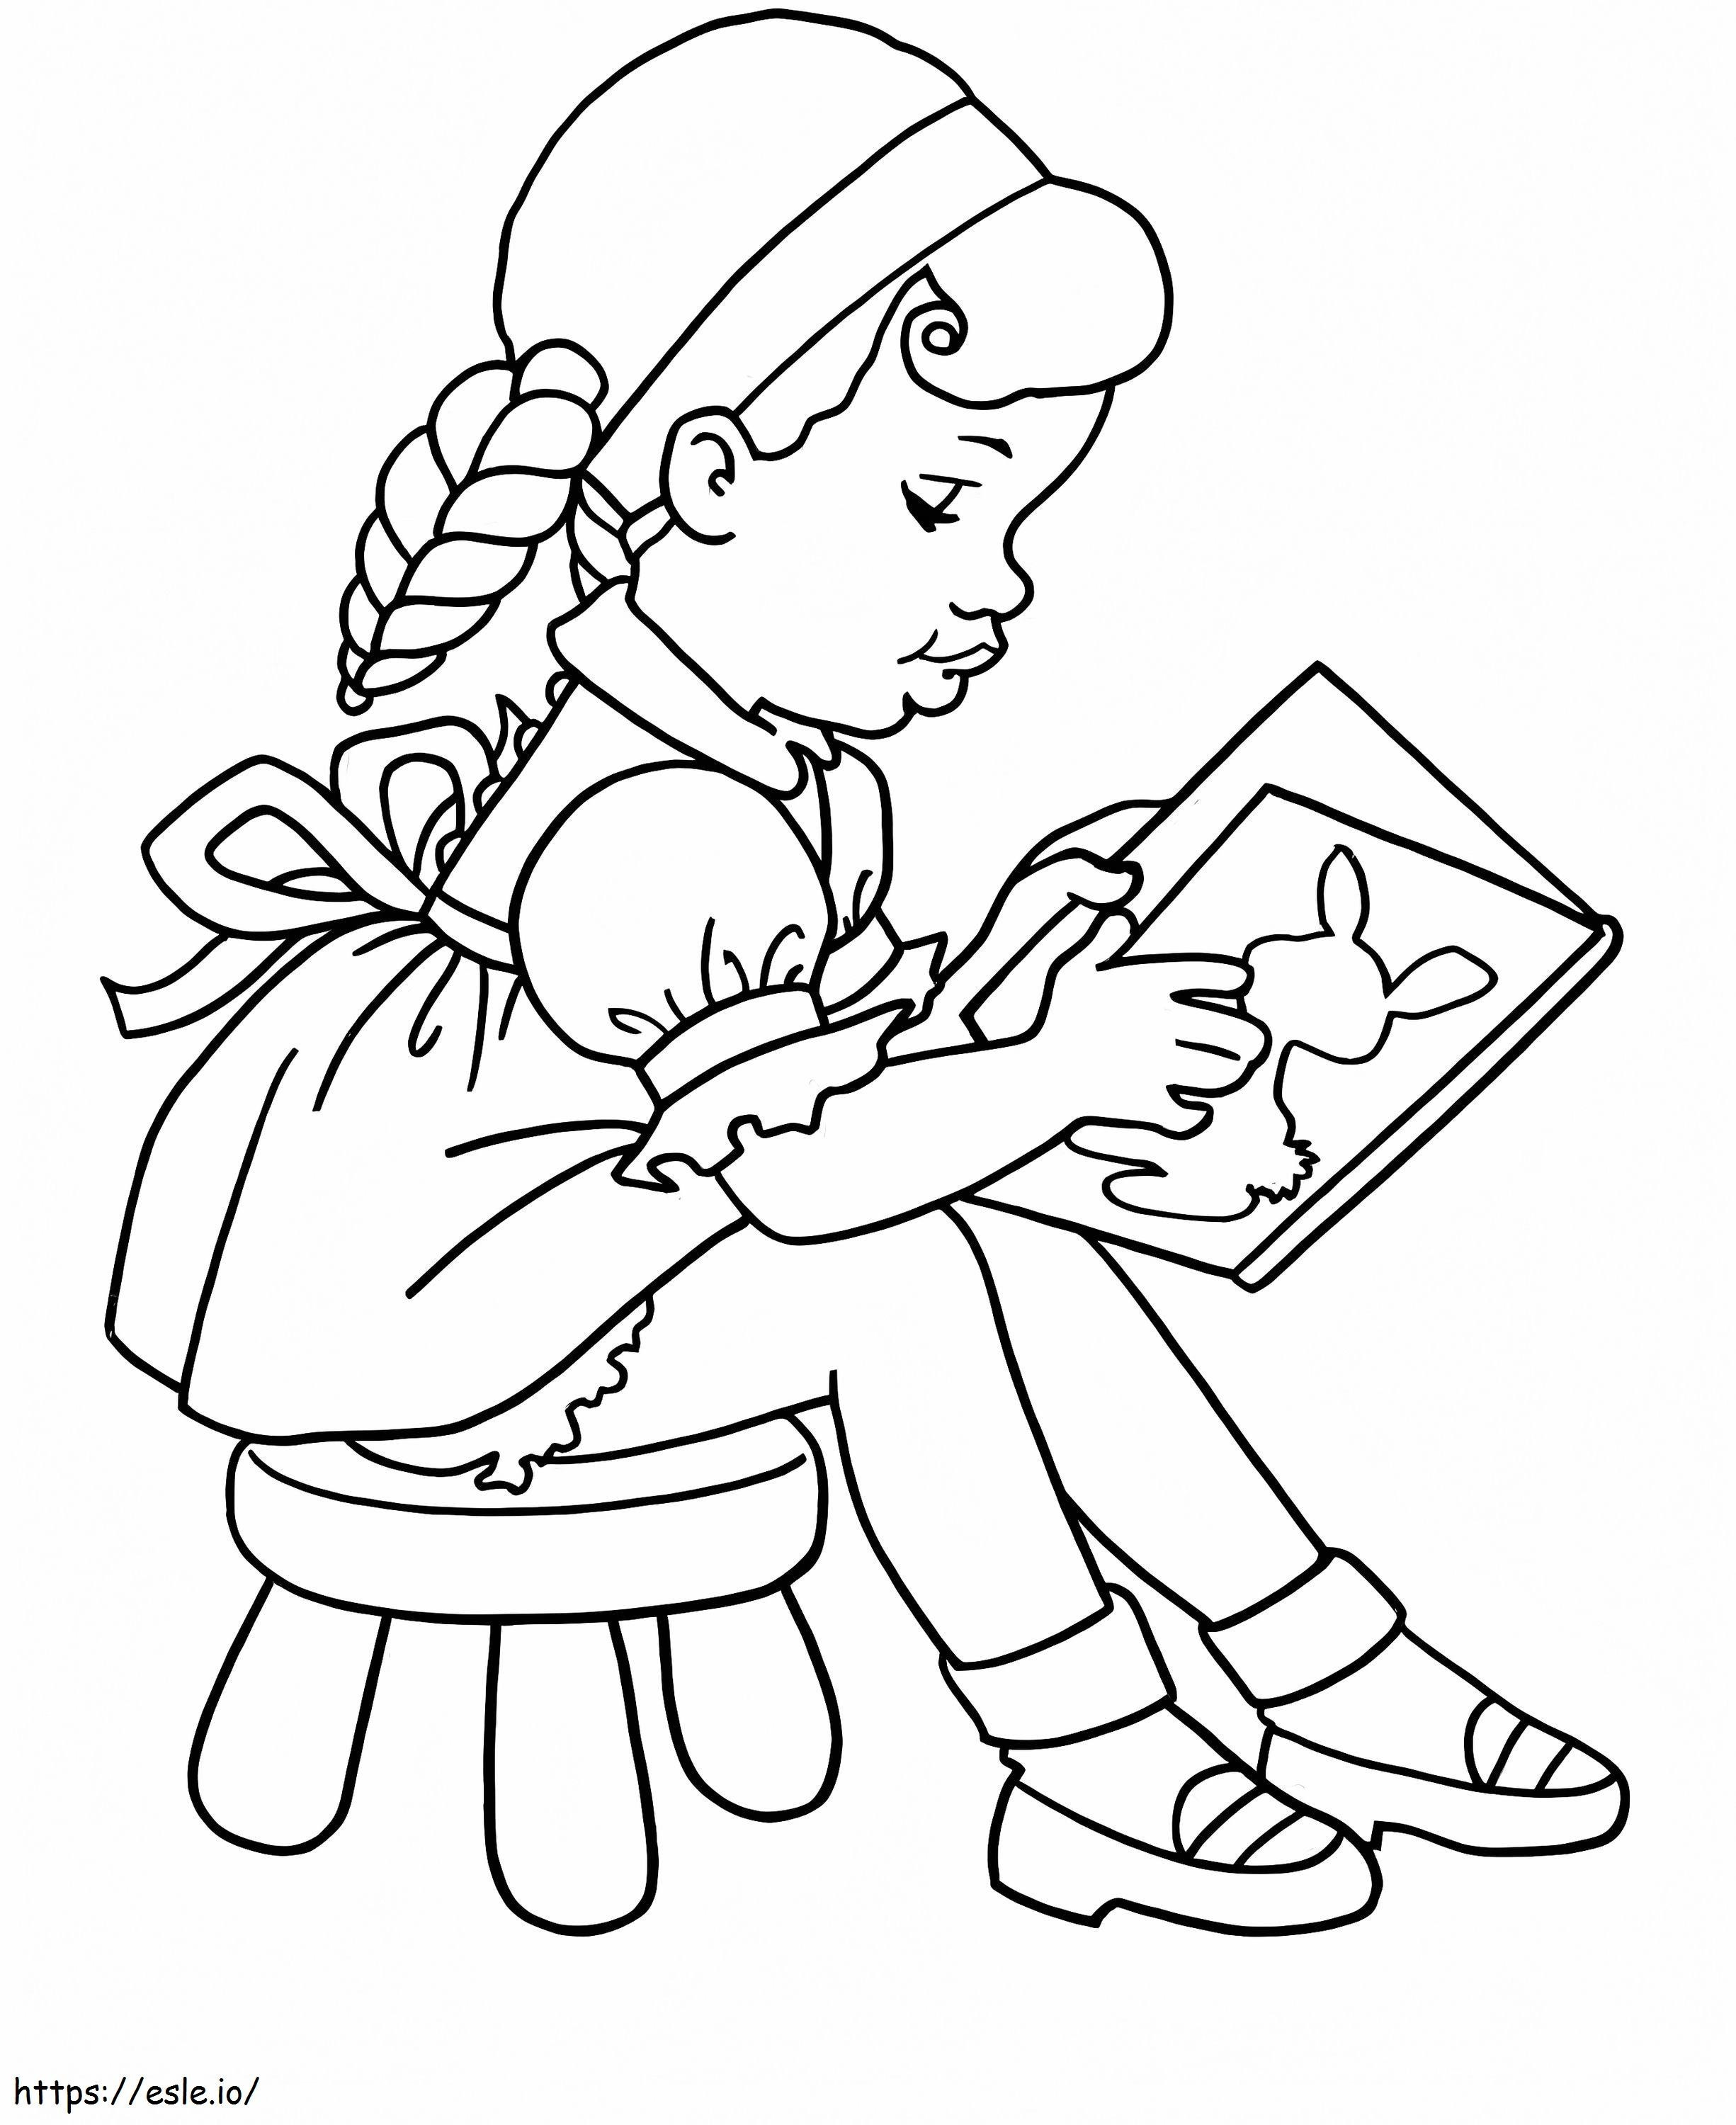 Nina lendo um livro na escola para colorir